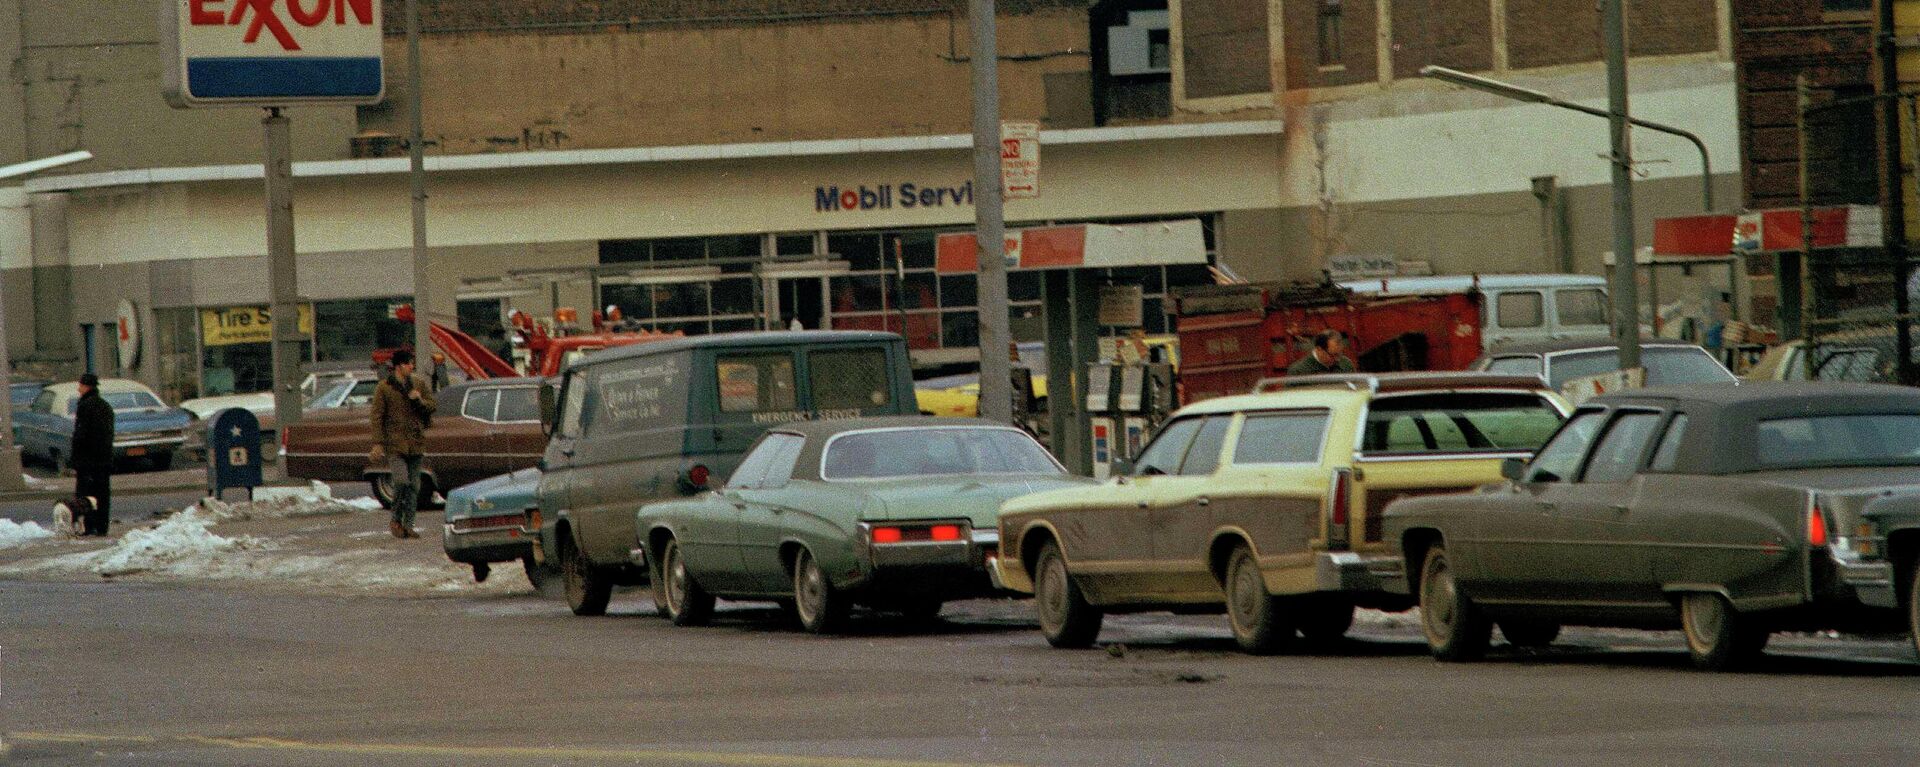 Автомобилисты ожидают своей очереди на заправку во время энергетического кризиса, Нью-Йорк, 1974 год - Sputnik Азербайджан, 1920, 09.03.2022